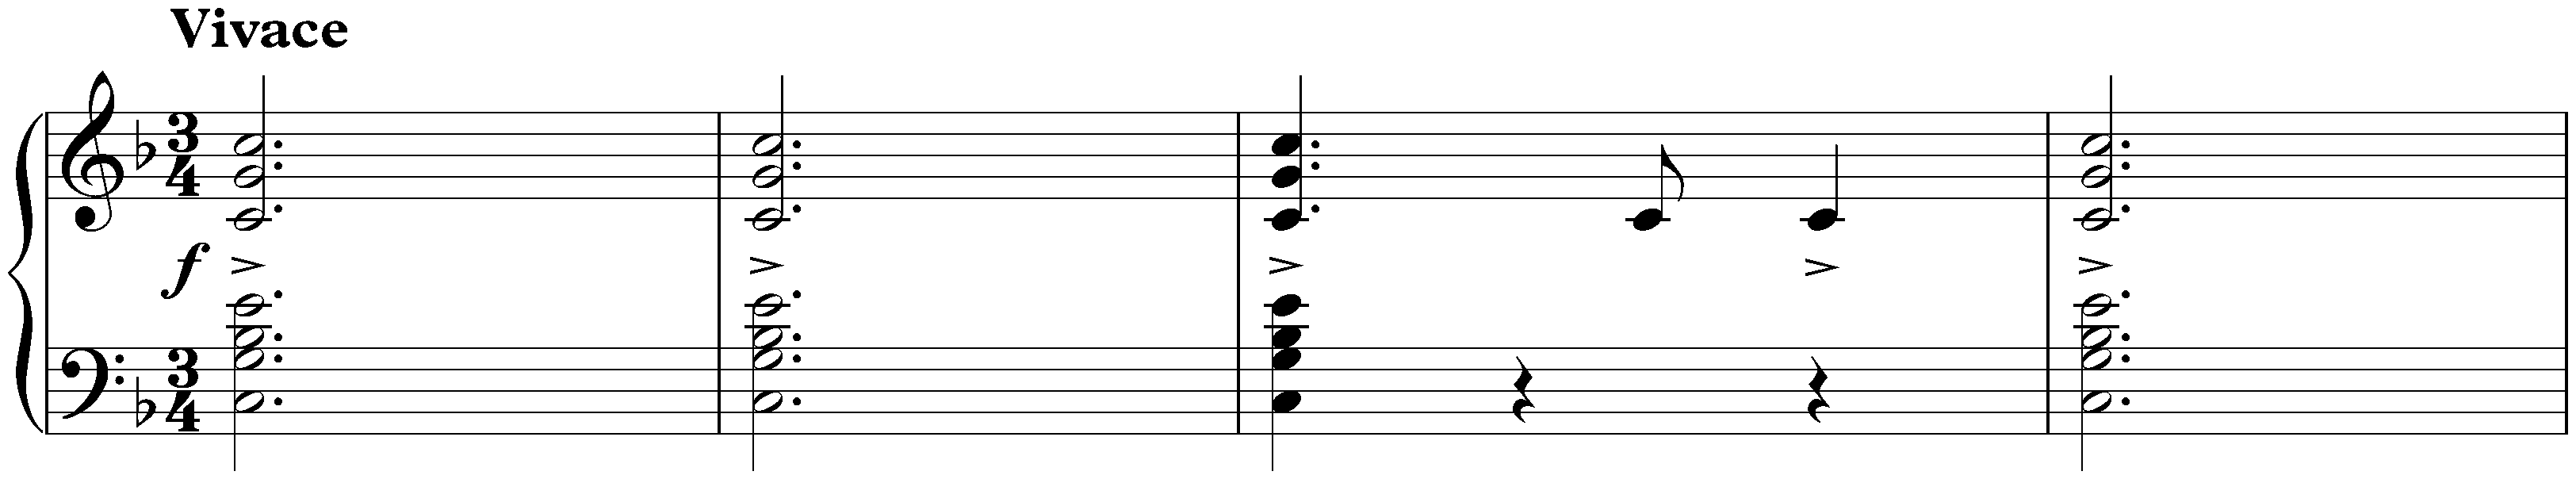 Three Valses, op. 34; 3. F major